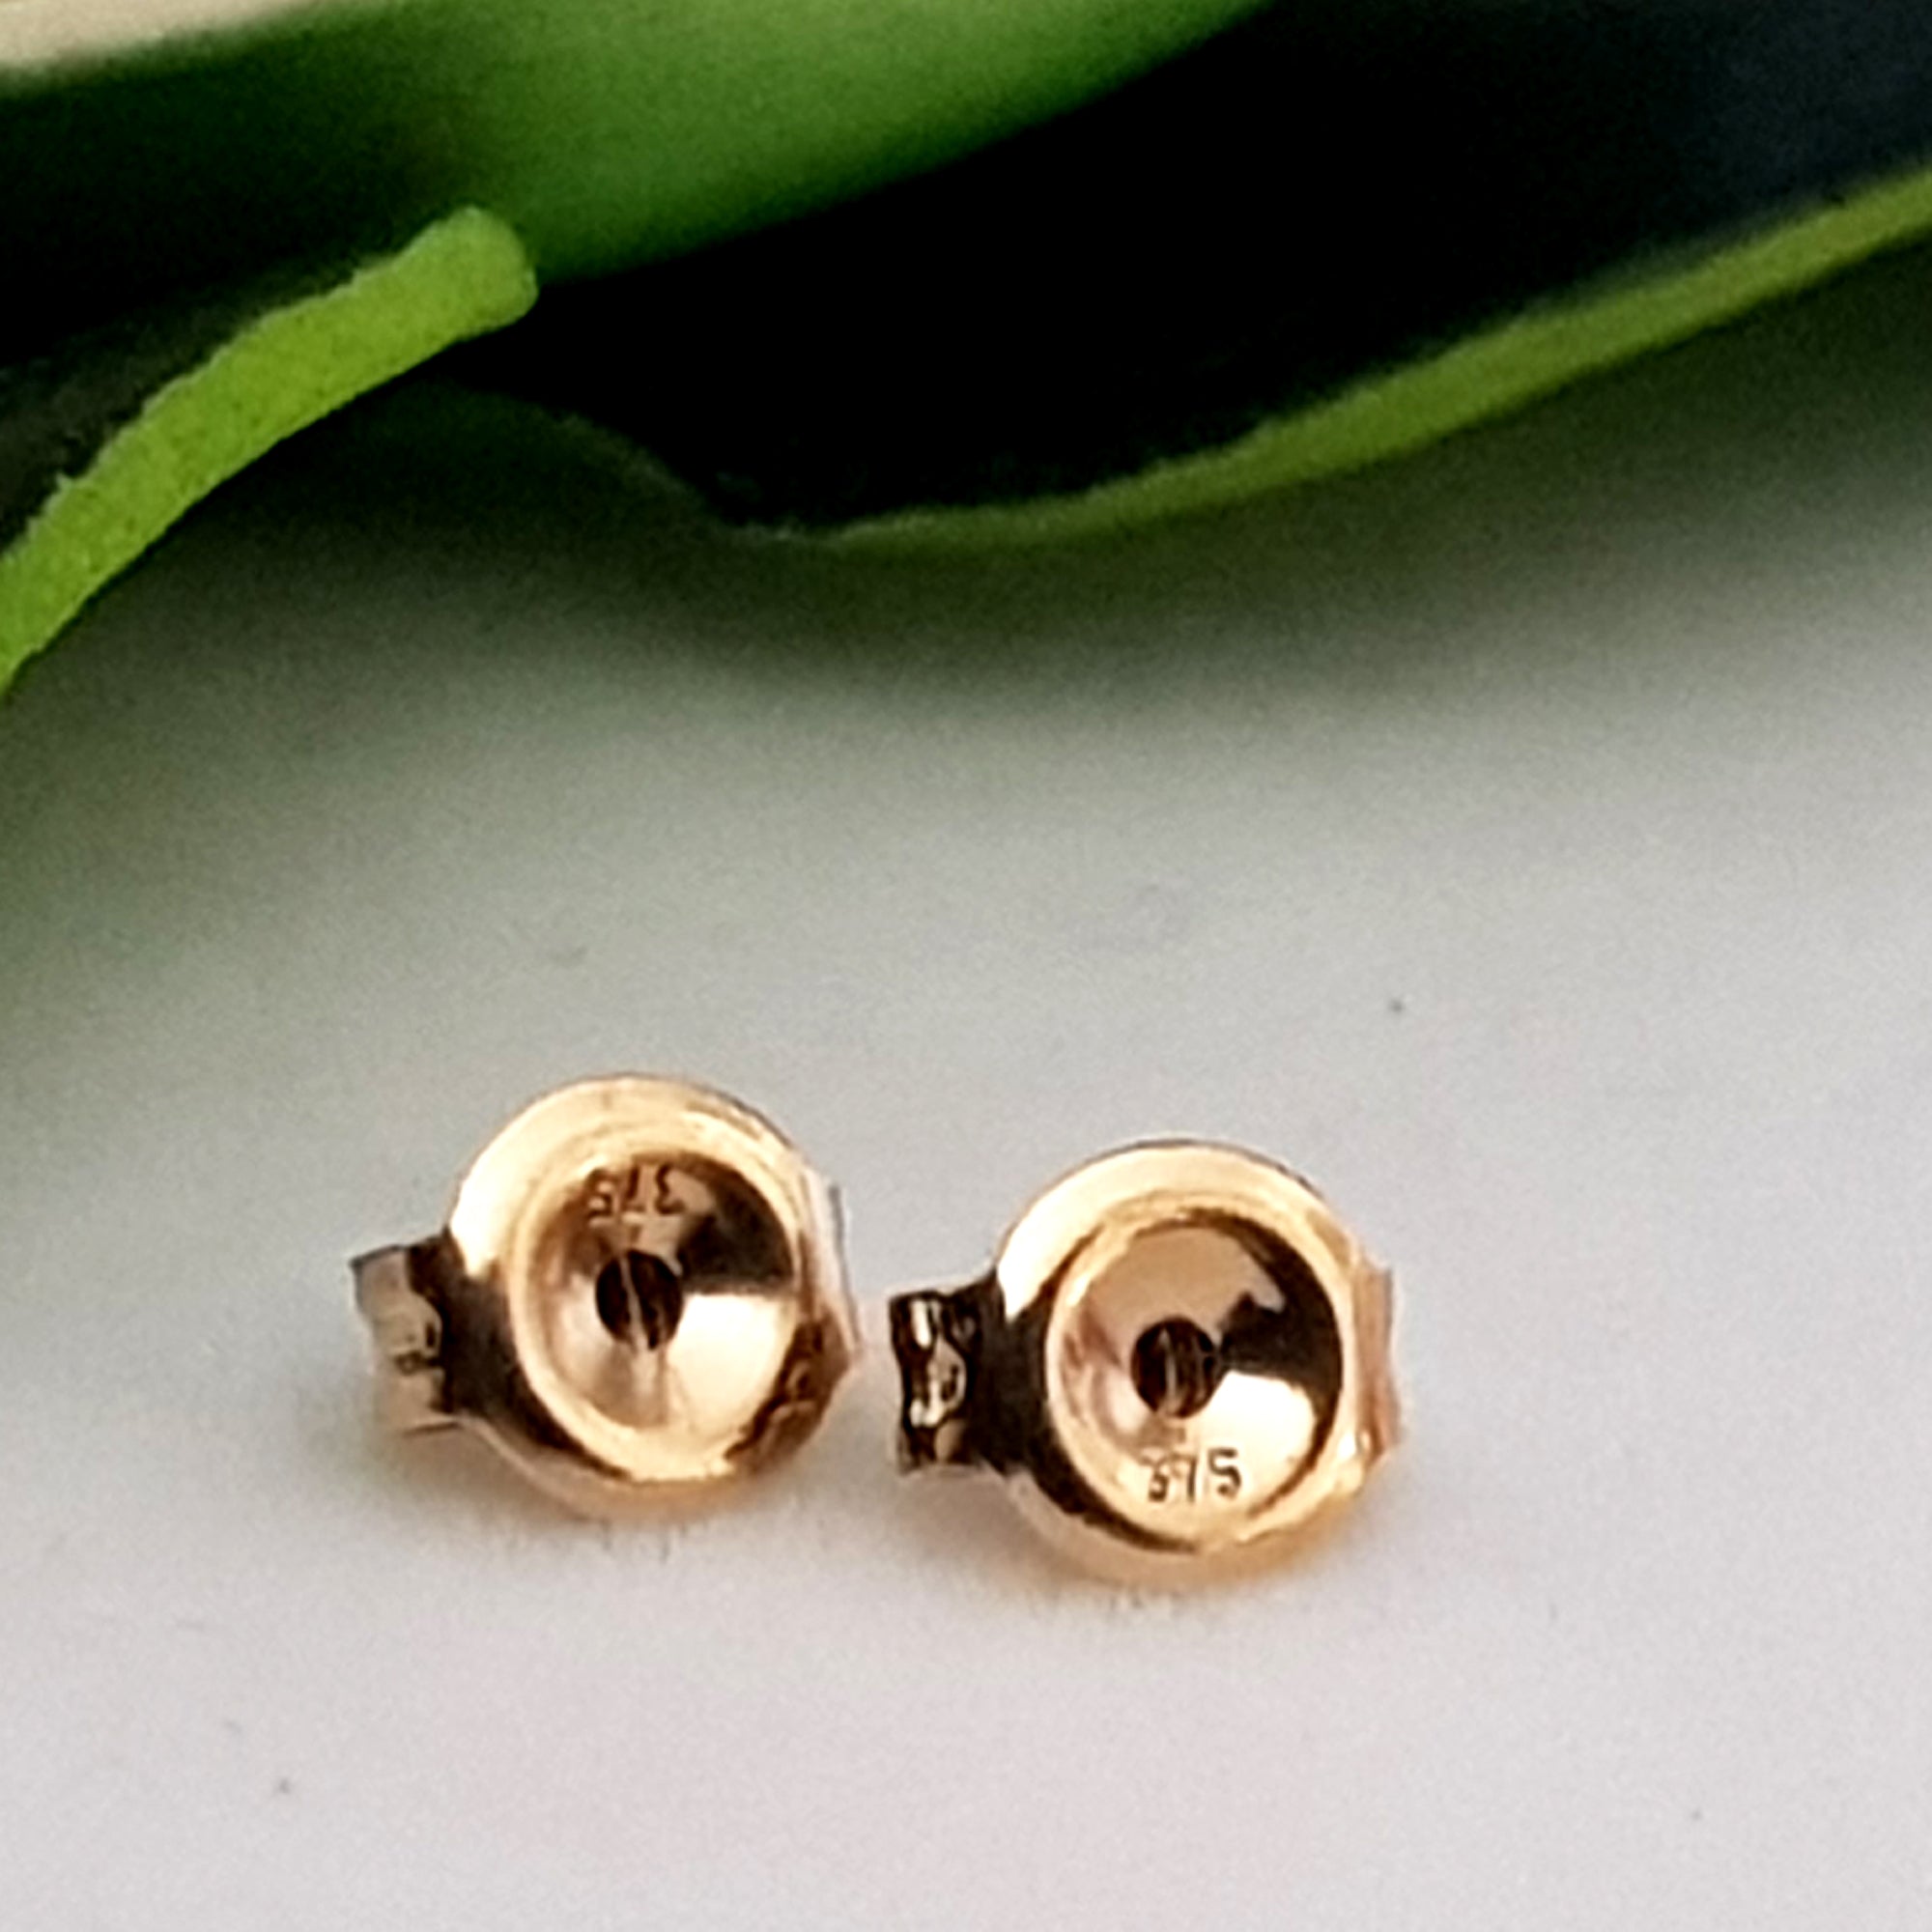 Earring Backs: 5mm 14k Gold Earring Backs · Dana Rebecca Designs